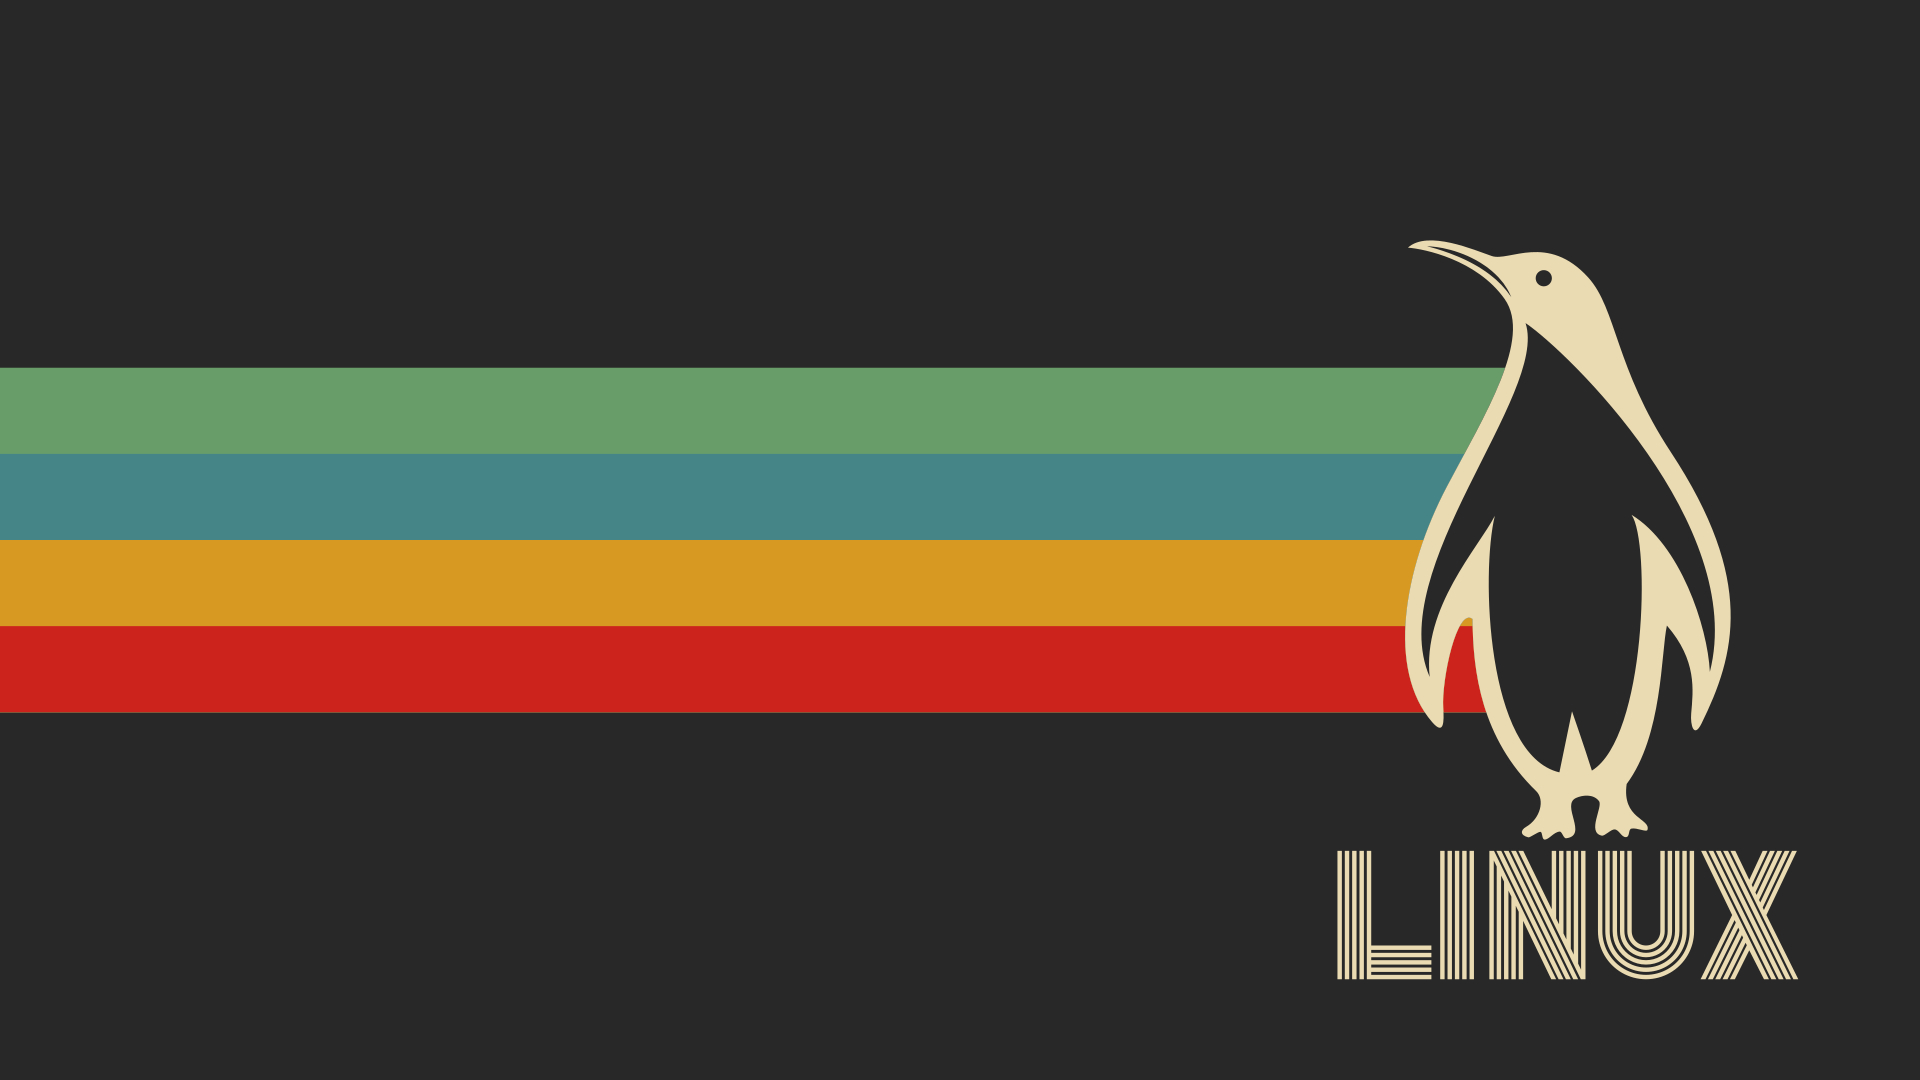 linux-wallpapers · GitHub Topics · GitHub